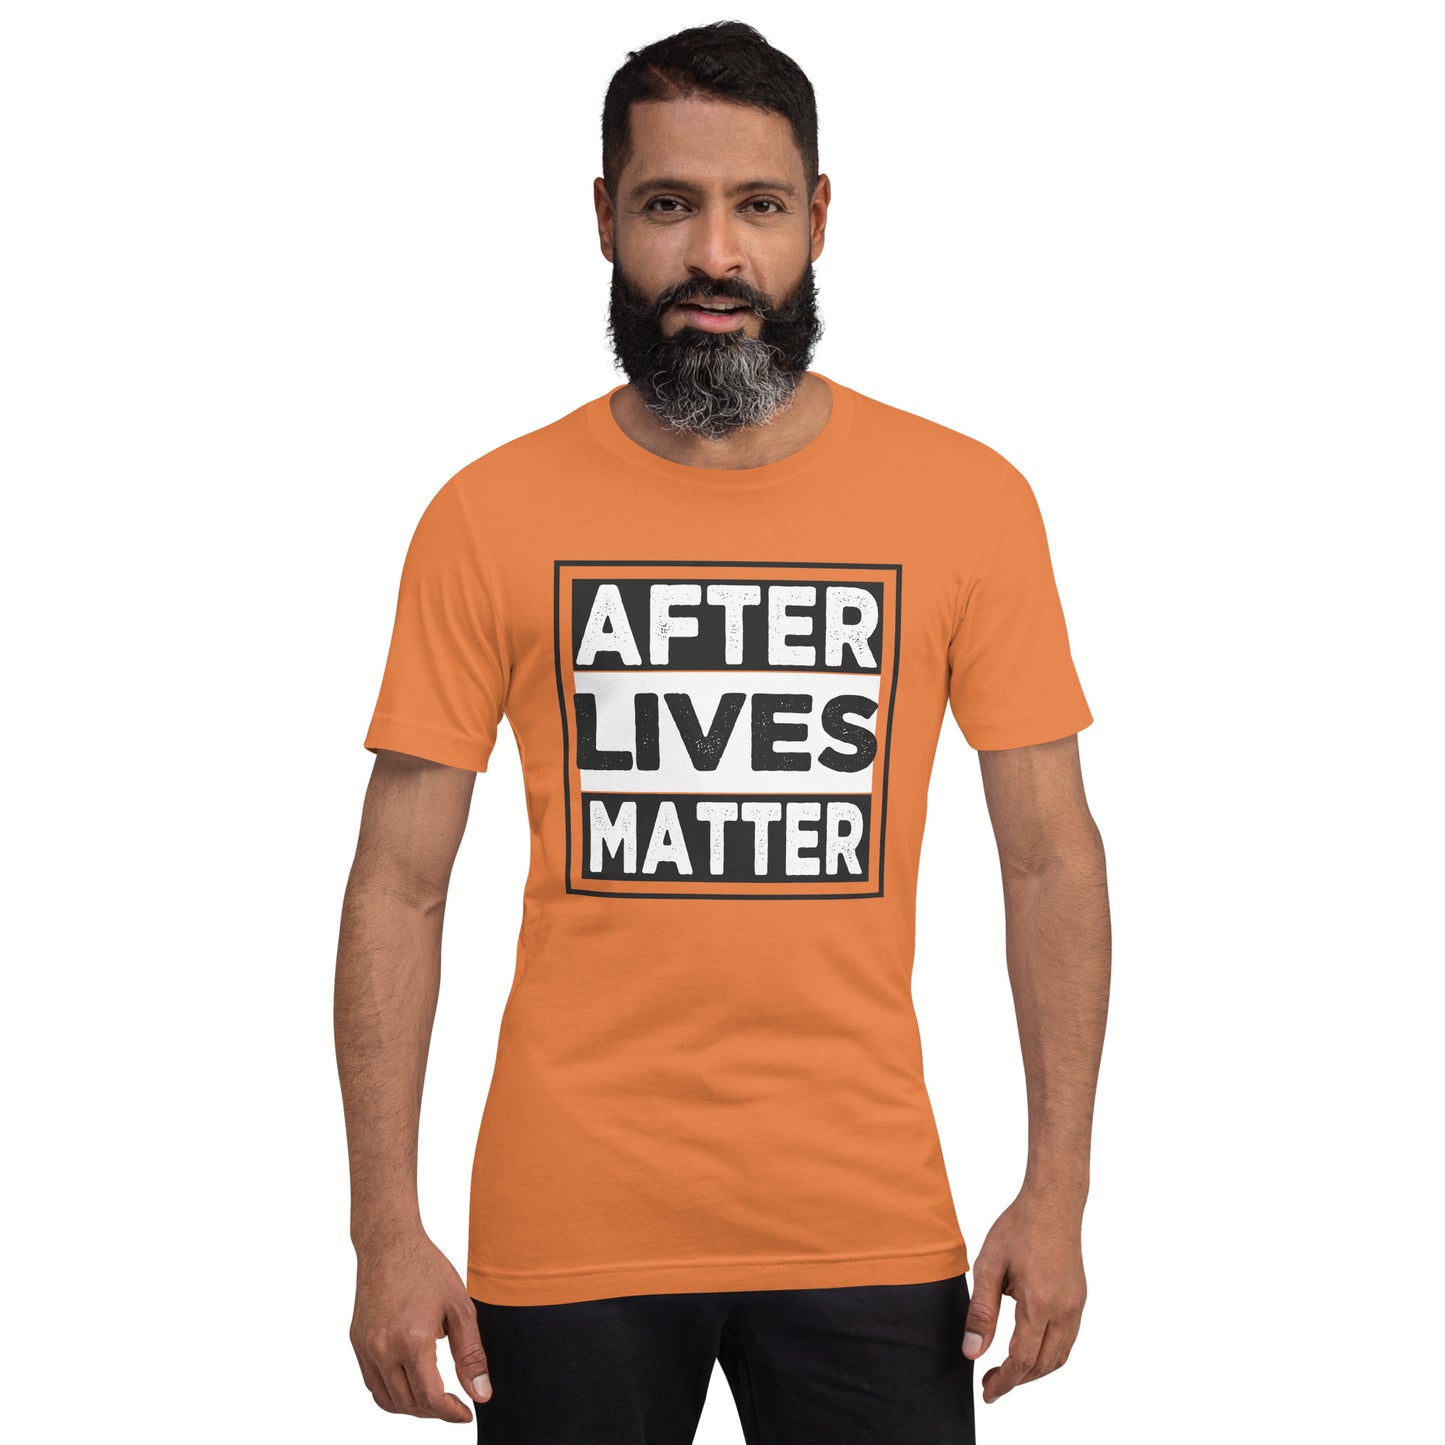 "After Lives Matter" / Unisex t-shirt